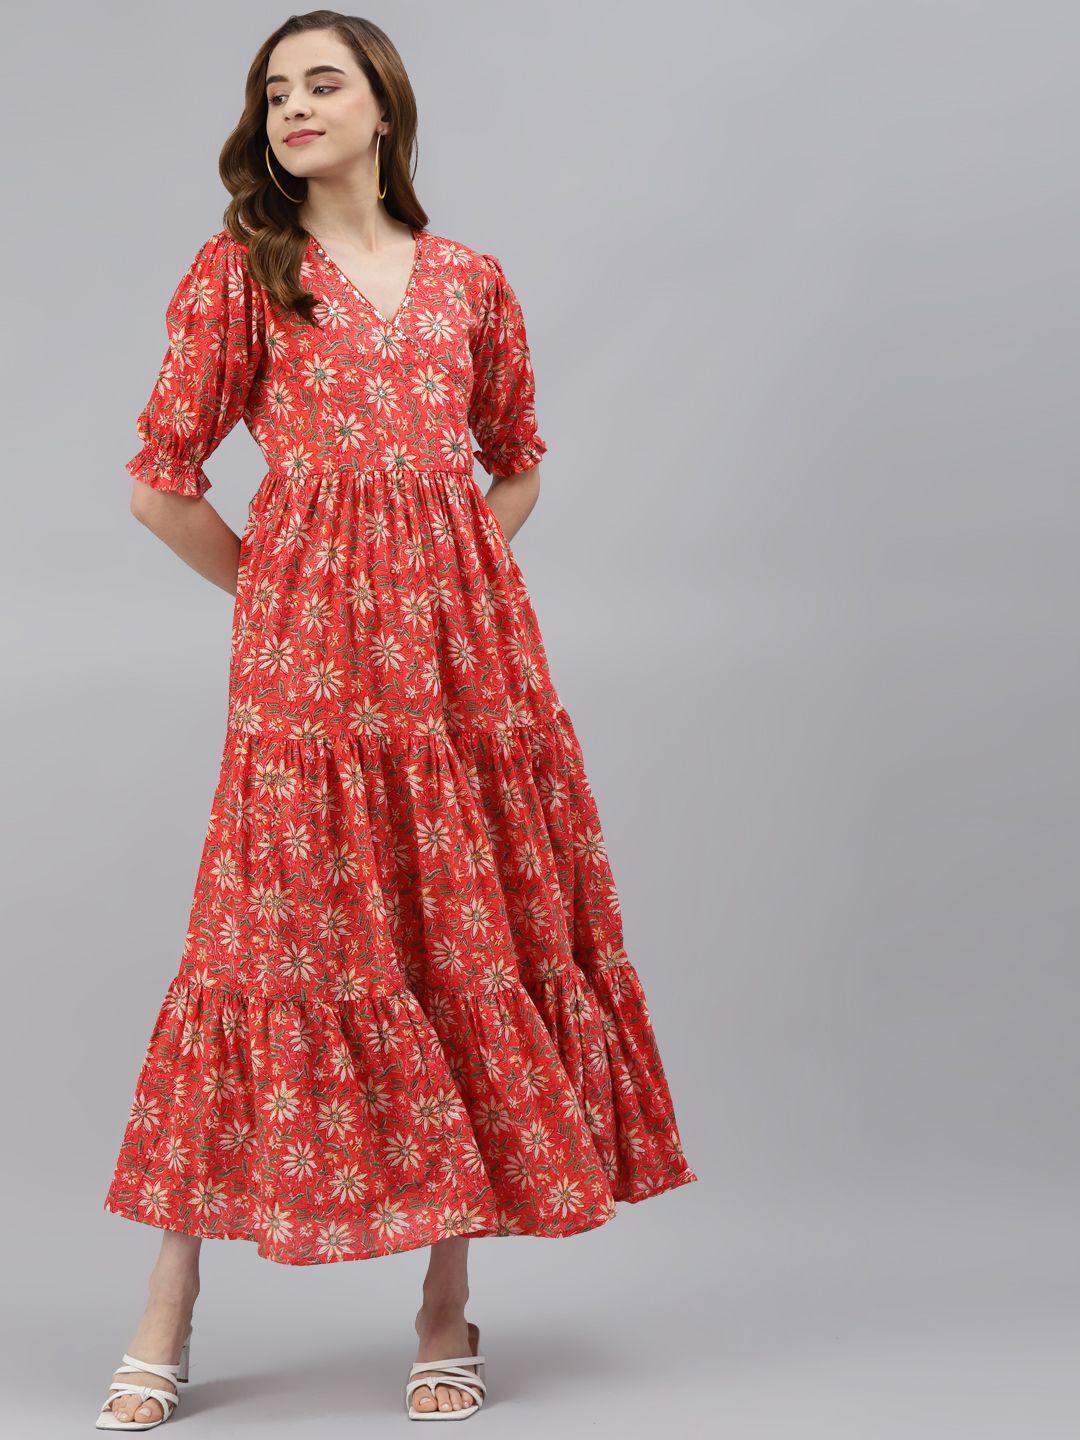 hatheli red embellished ethnic maxi dress